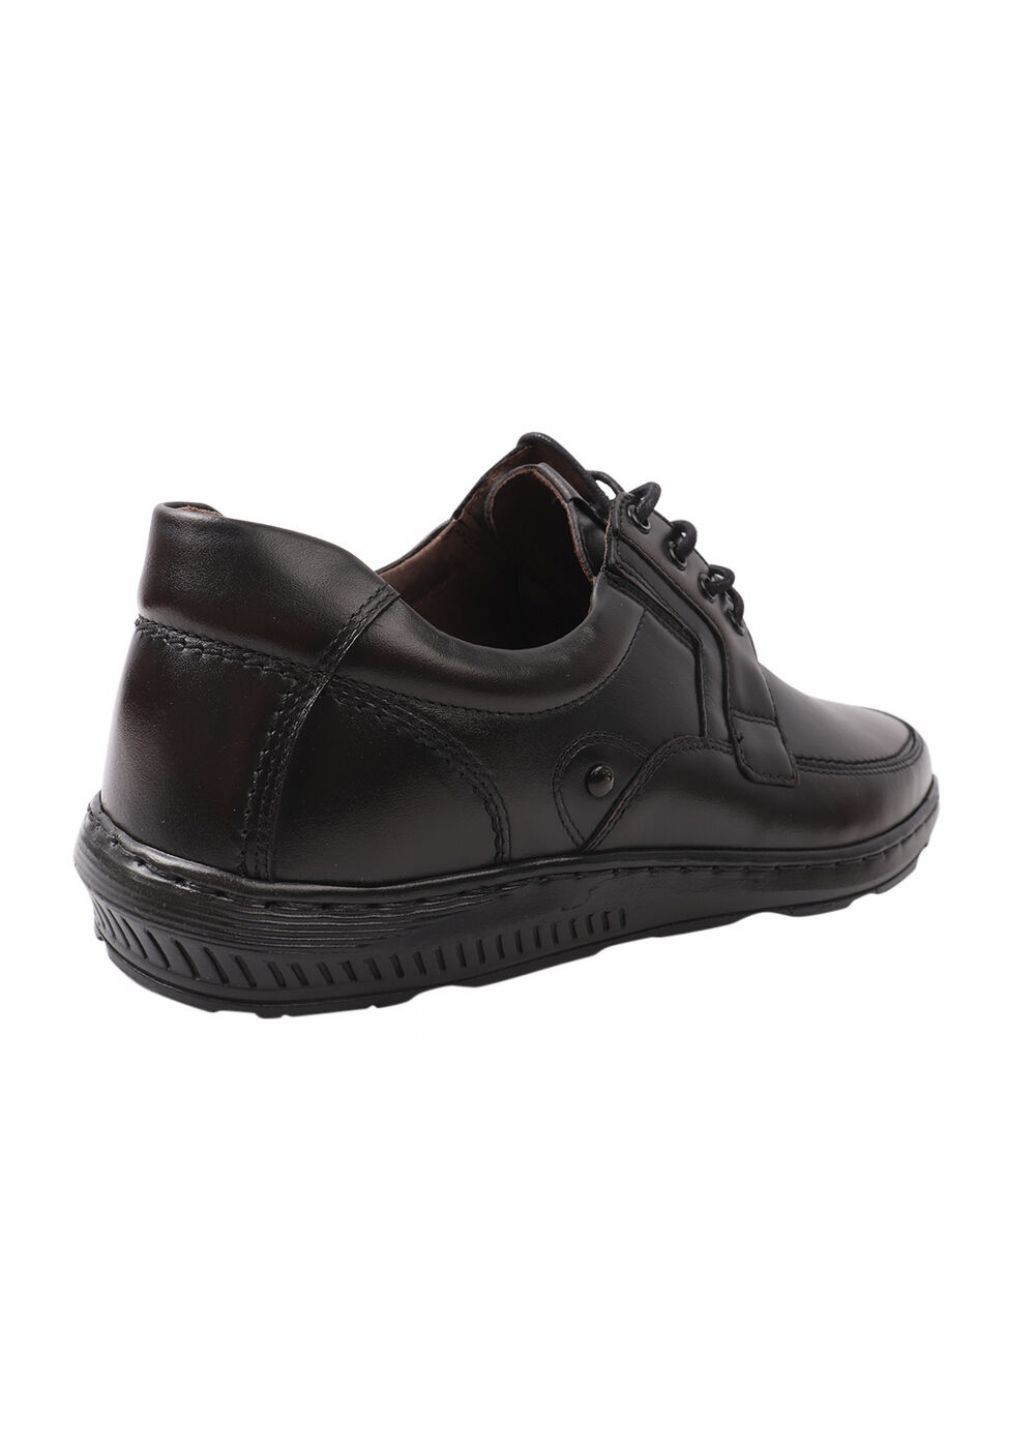 Черные туфли мужские из натуральной кожи, на низком ходу, цвет черный, Giorgio